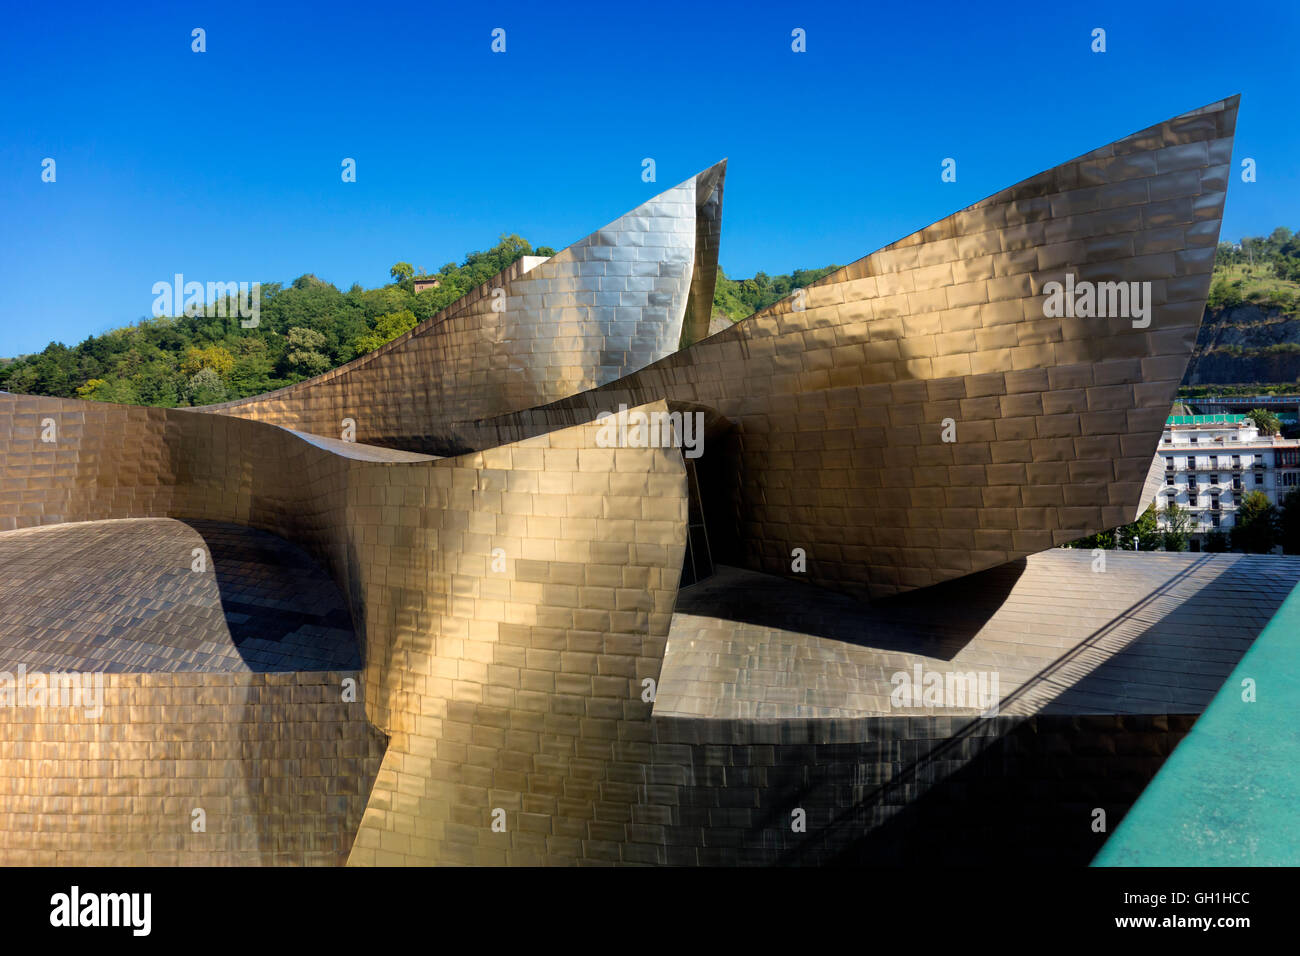 The iconic Guggenheim Museum in Bilbao, Spain 20 Stock Photo